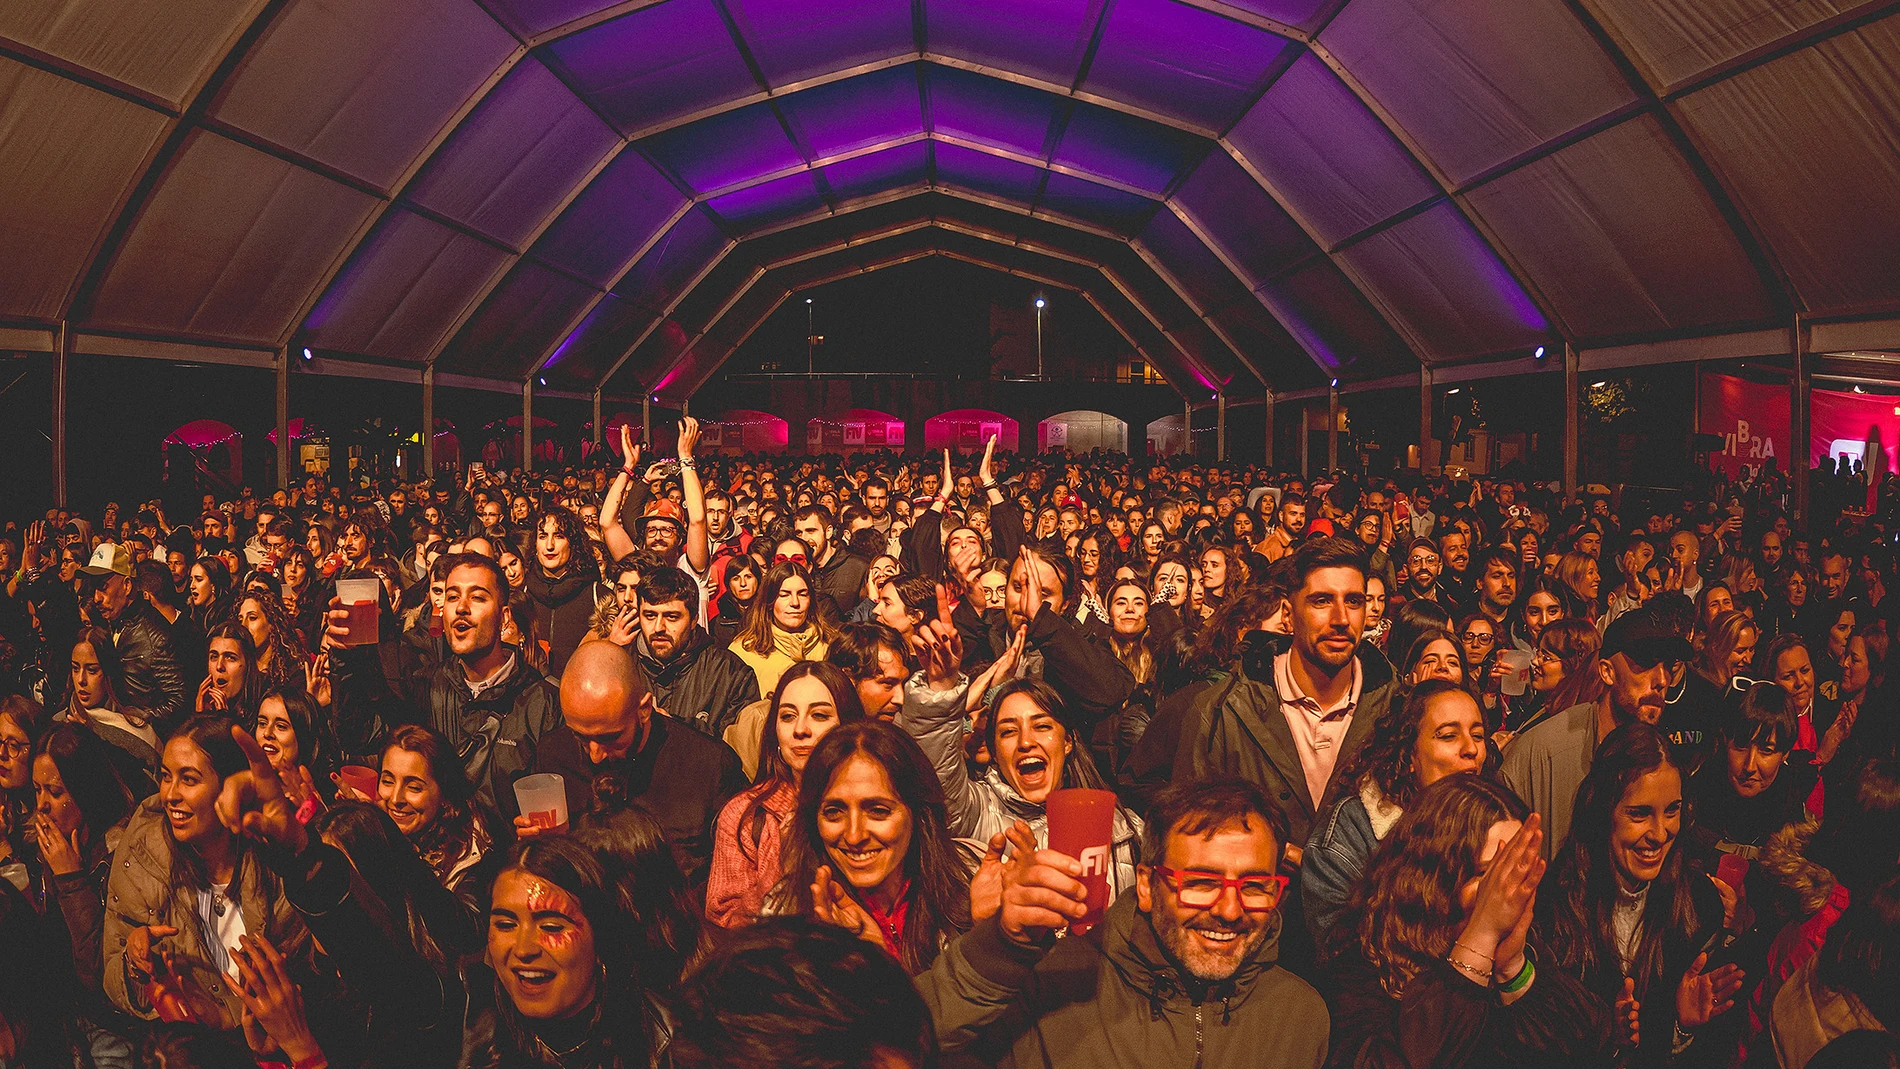 El FIV acogió cerca de 6.000 personas el pasado fin de semana en Vilalba, Lugo